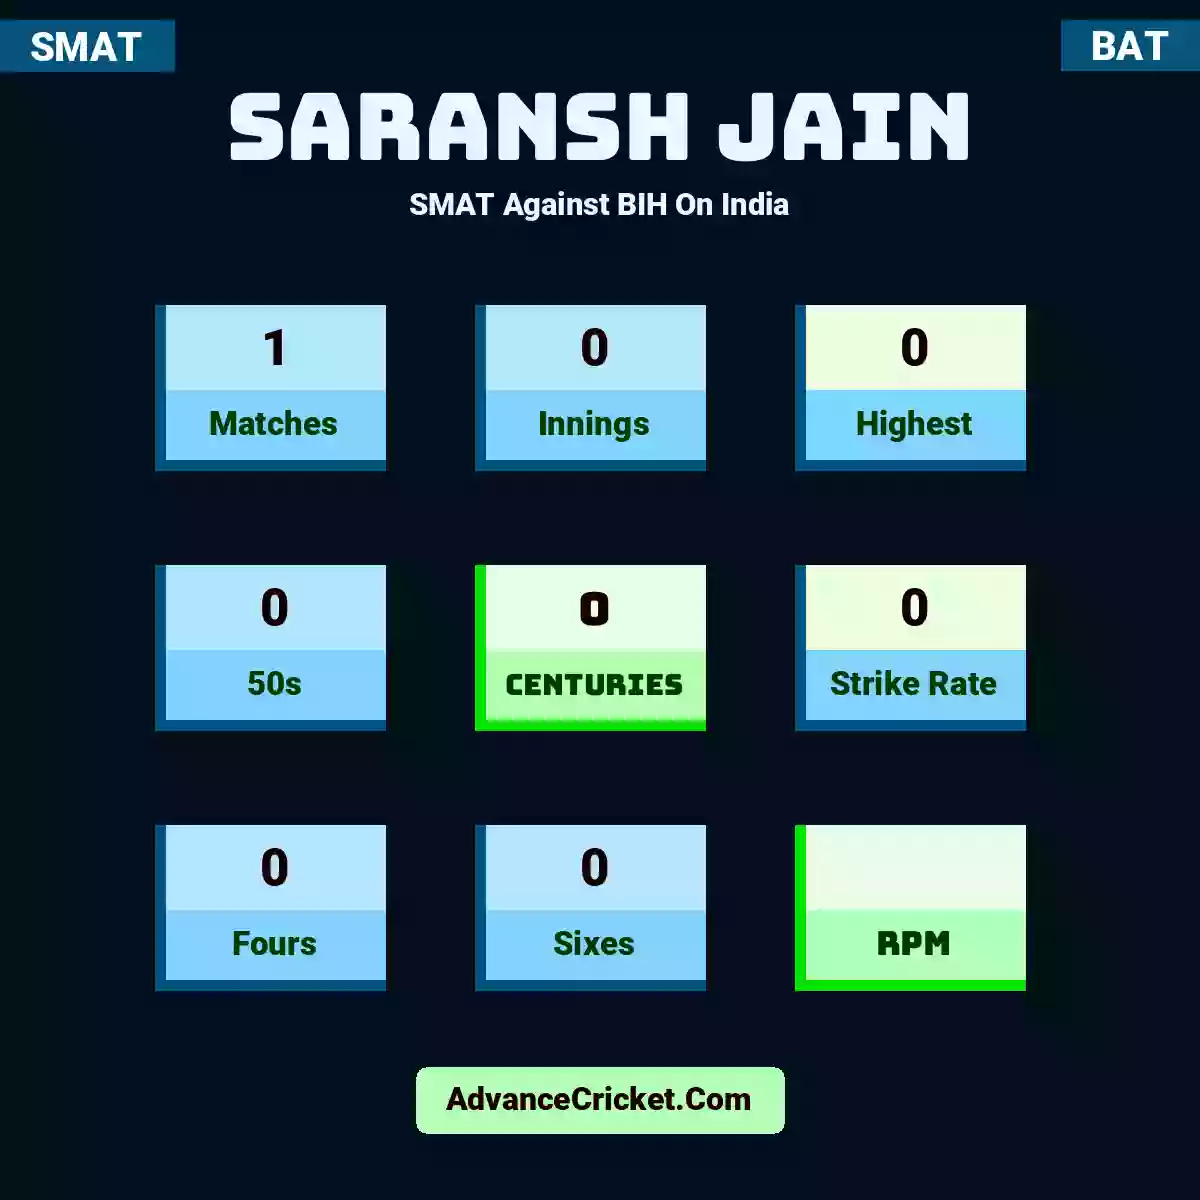 Saransh Jain SMAT  Against BIH On India, Saransh Jain played 1 matches, scored 0 runs as highest, 0 half-centuries, and 0 centuries, with a strike rate of 0. S.Jain hit 0 fours and 0 sixes.